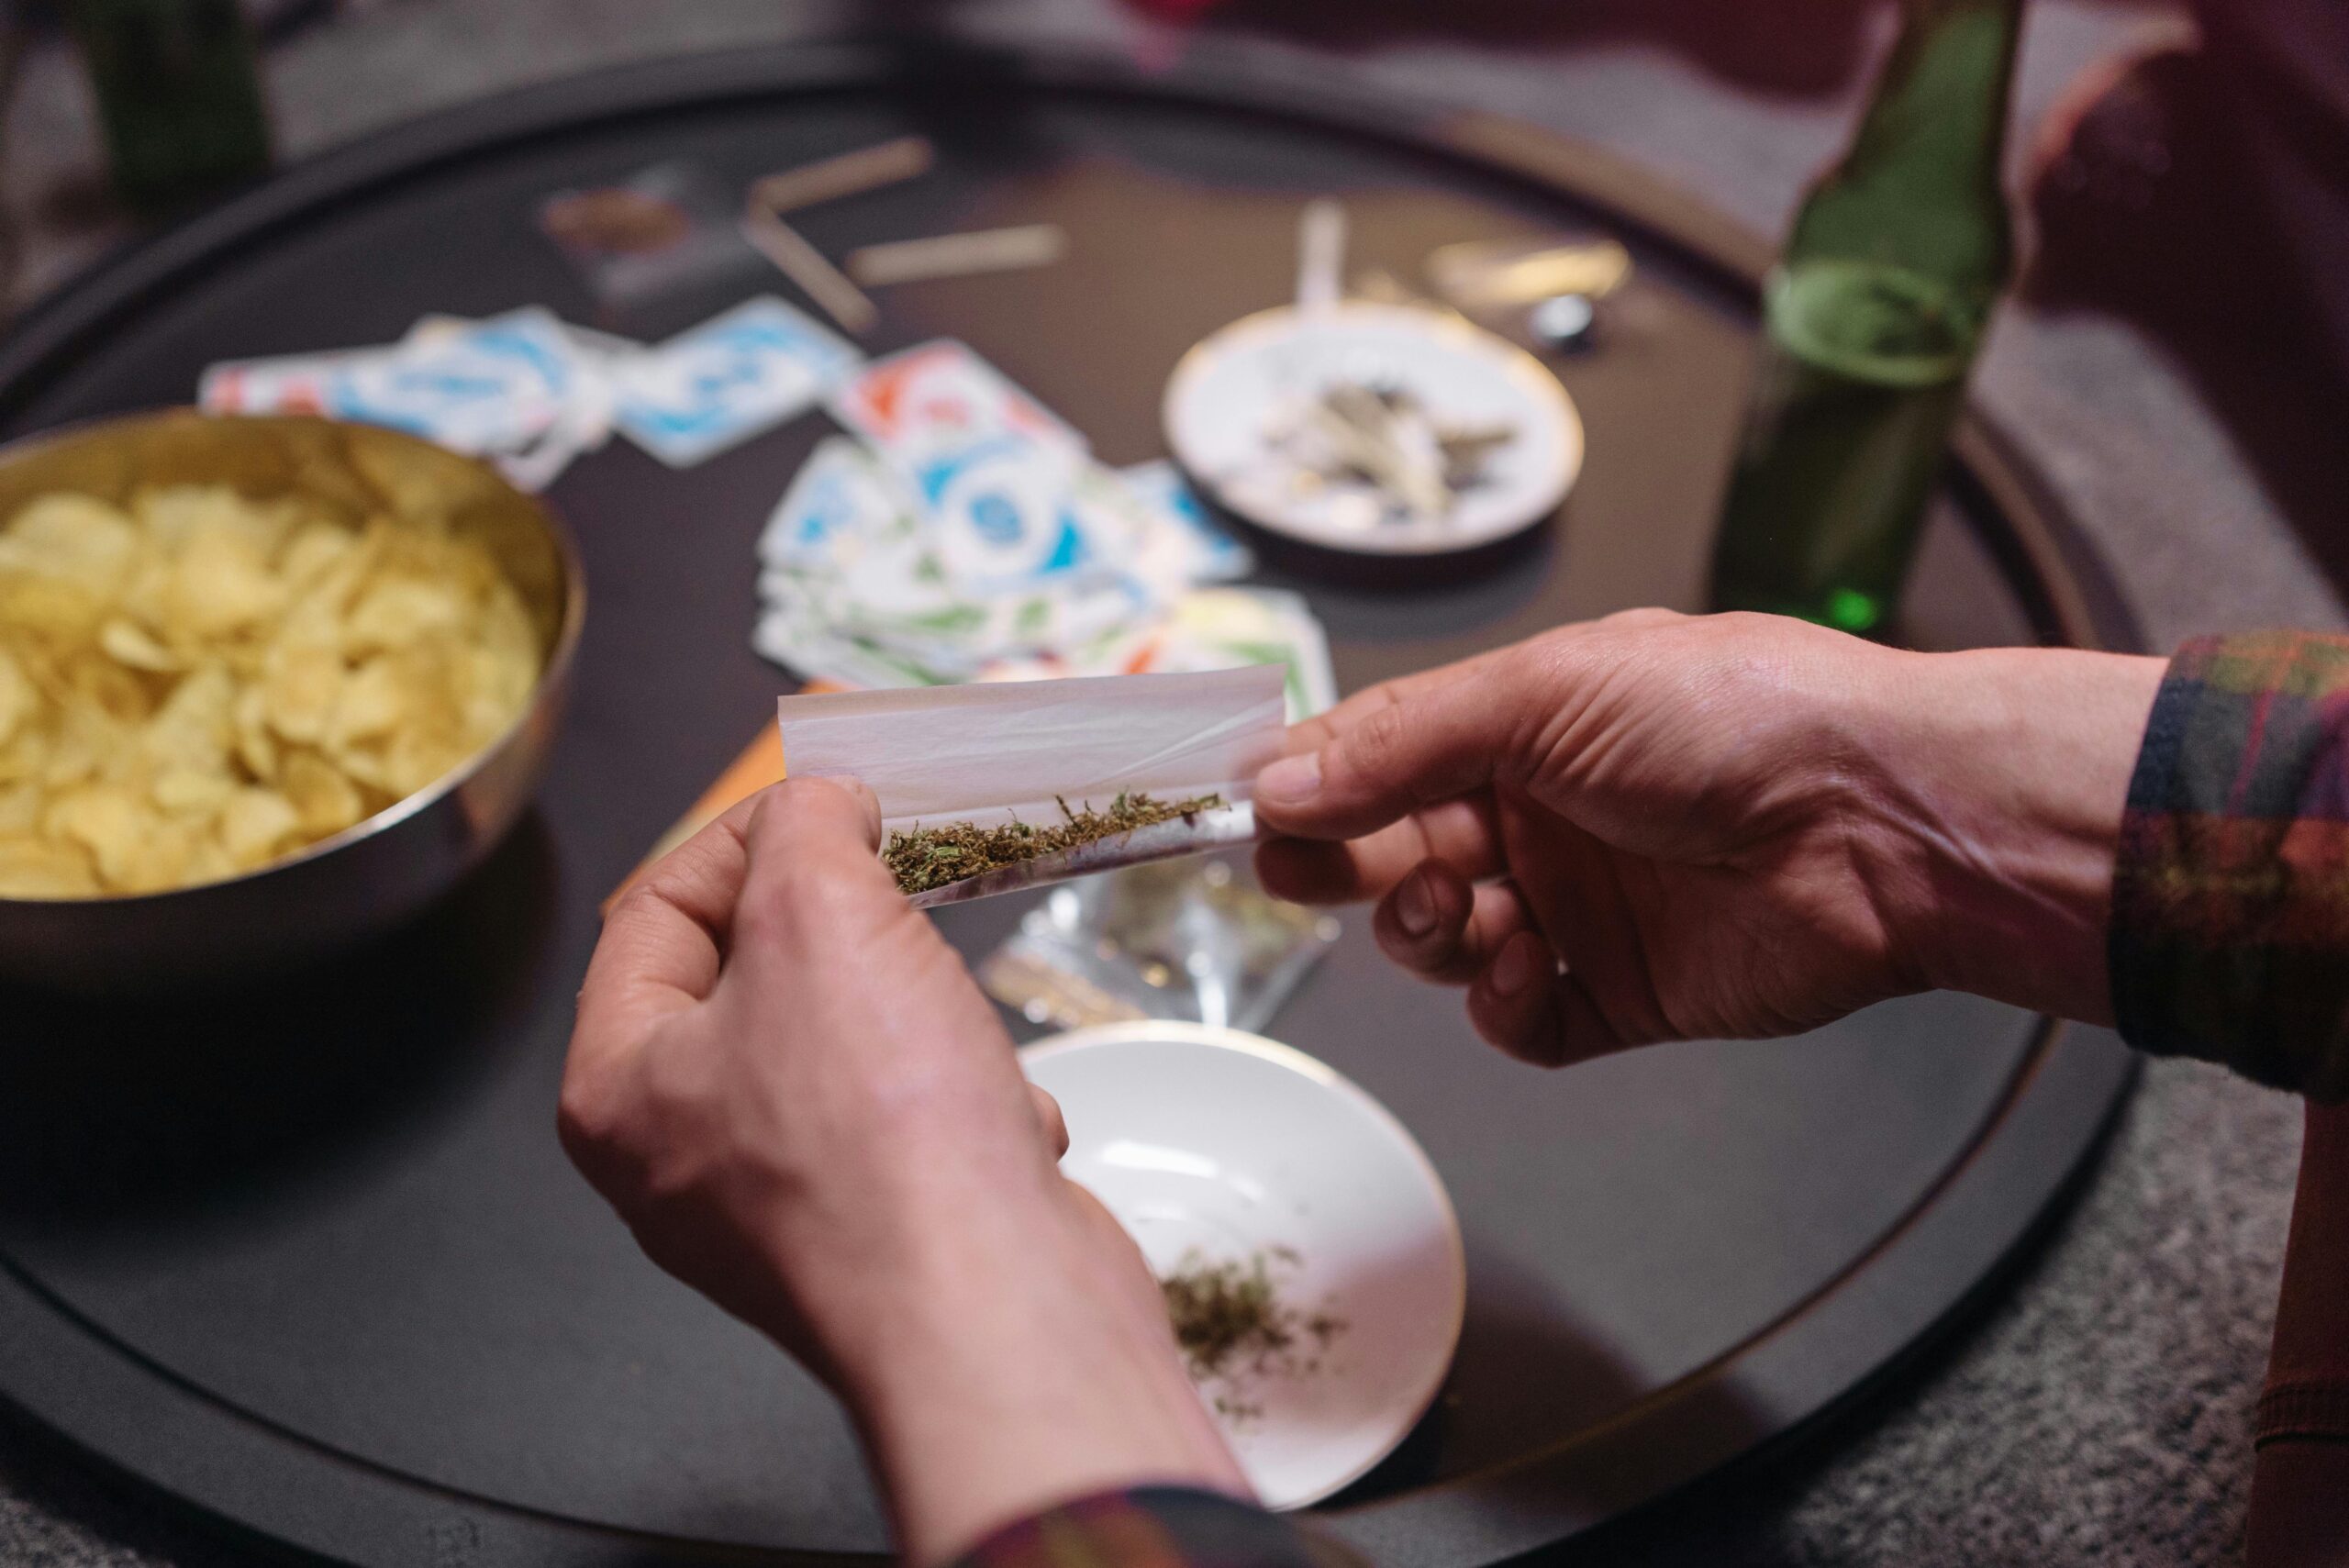 Medidas. Cada vez son más los Estados que deciden probar soluciones que violan las normas internacionales, como la legalización del consumo de cannabis.